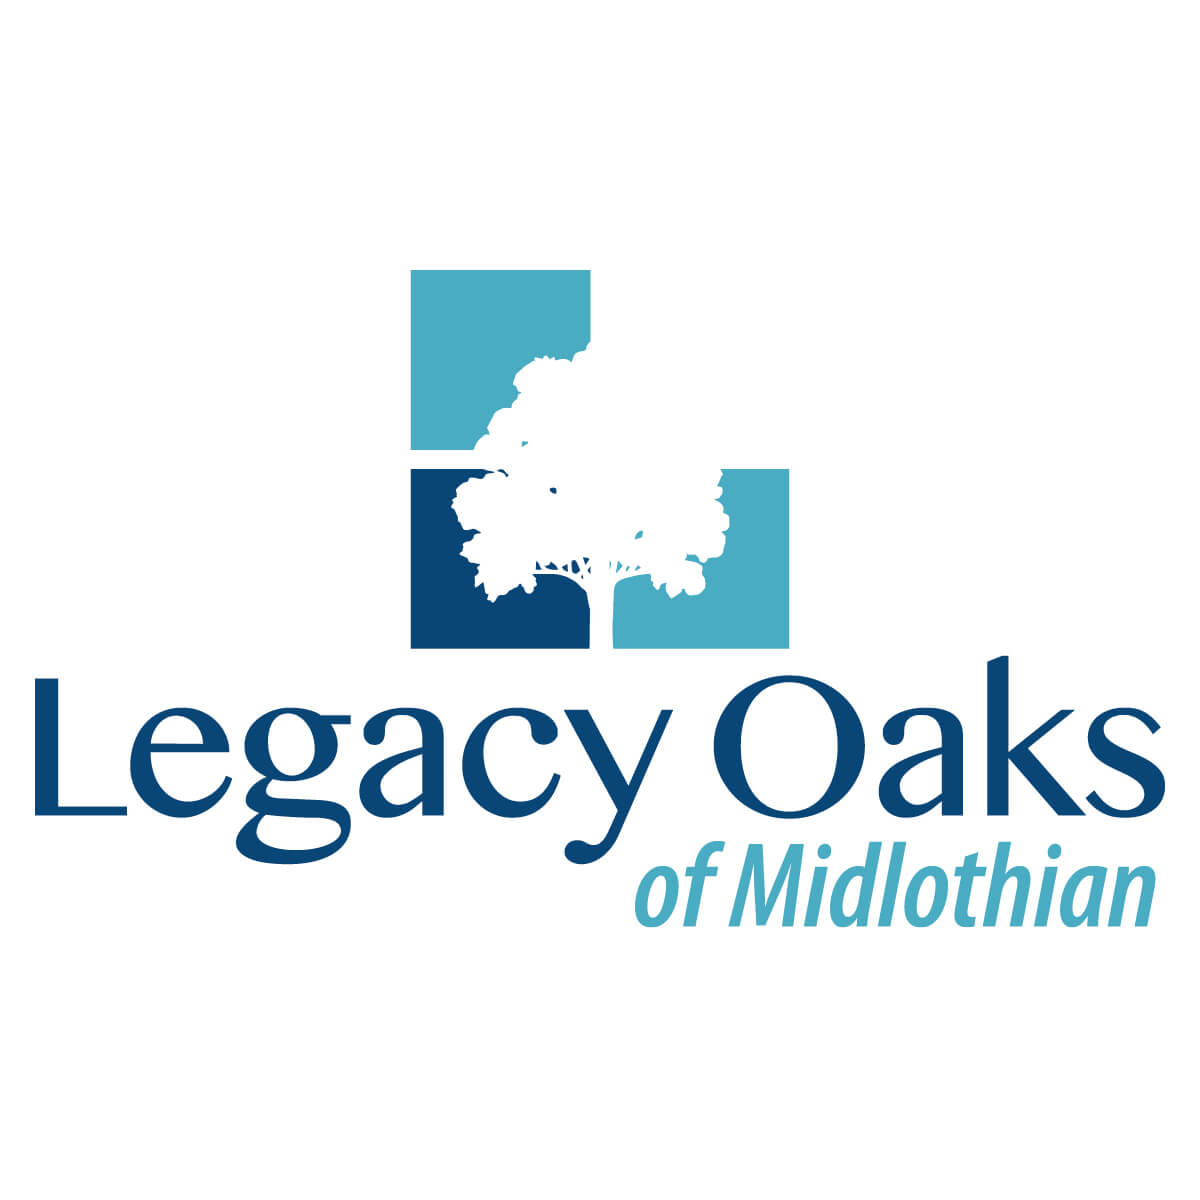 Legacy Oaks of Midlothian